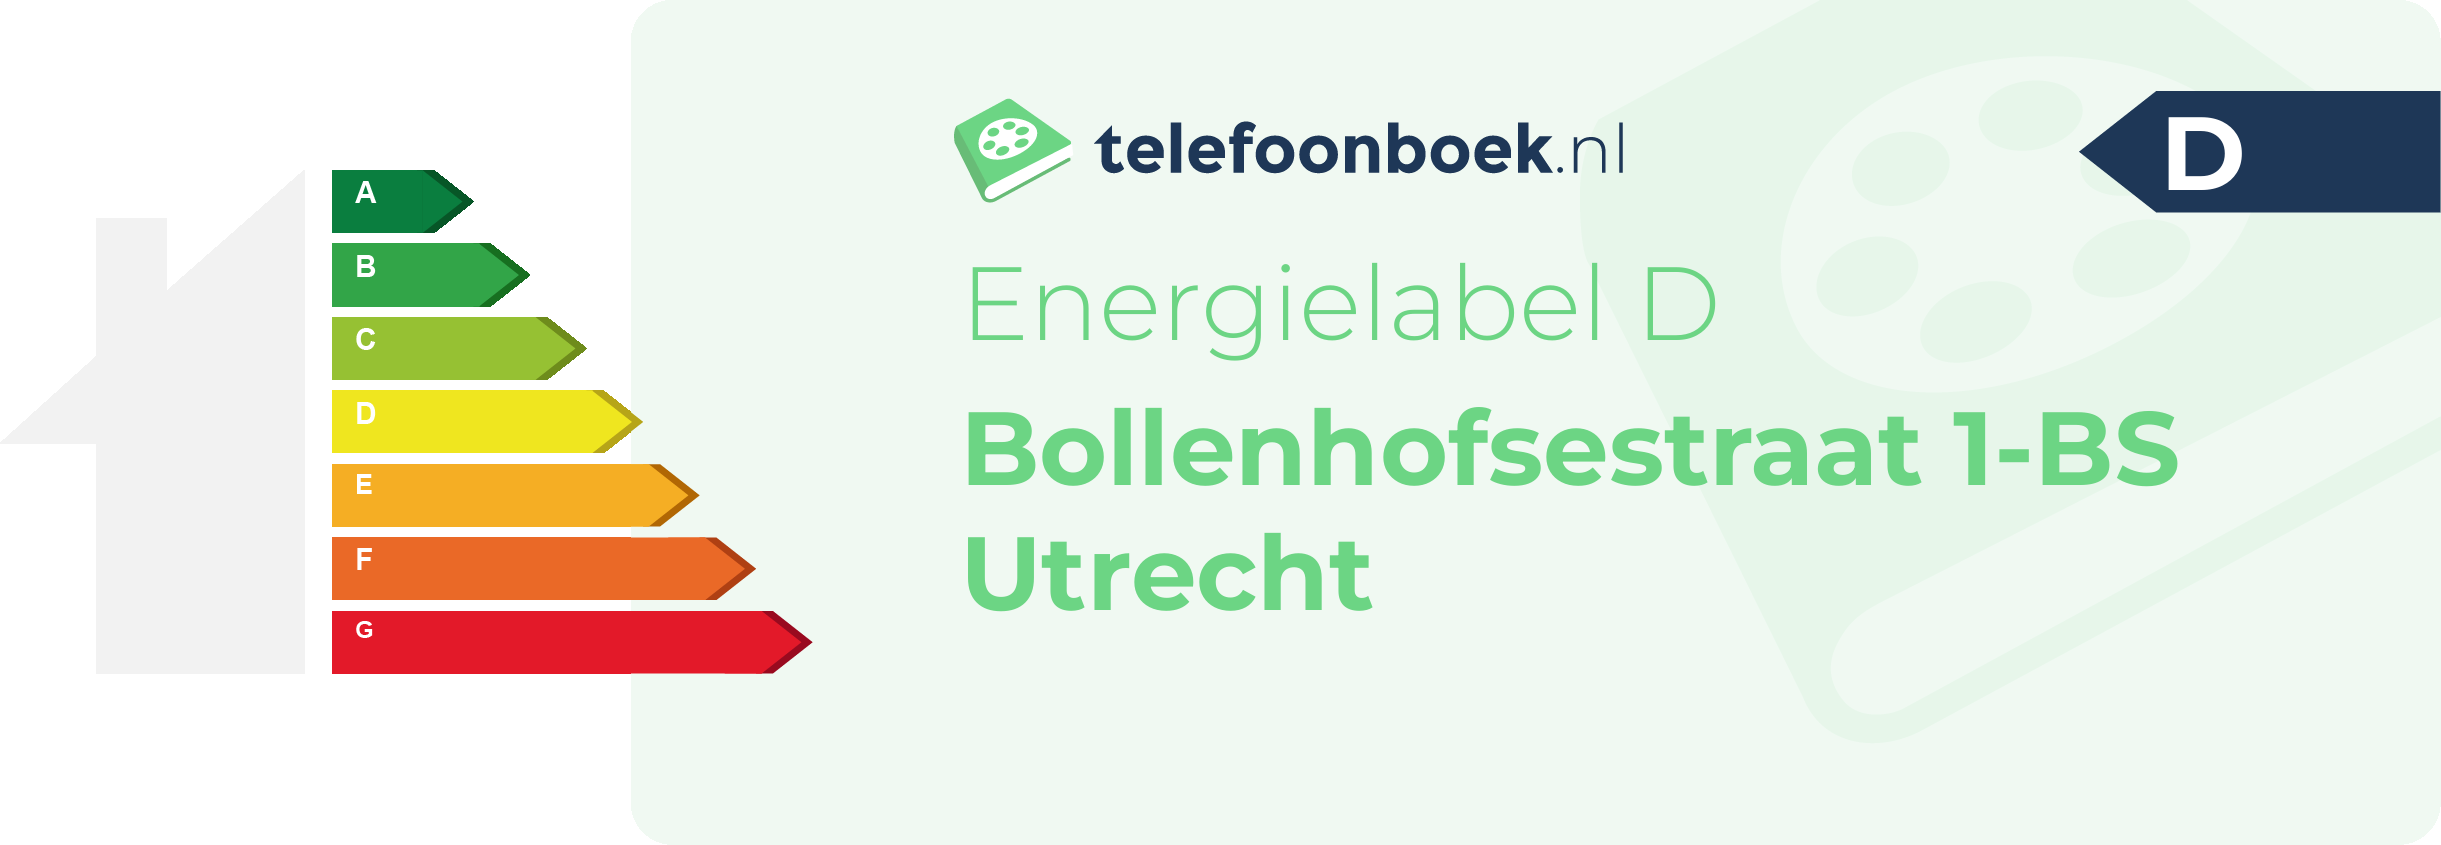 Energielabel Bollenhofsestraat 1-BS Utrecht